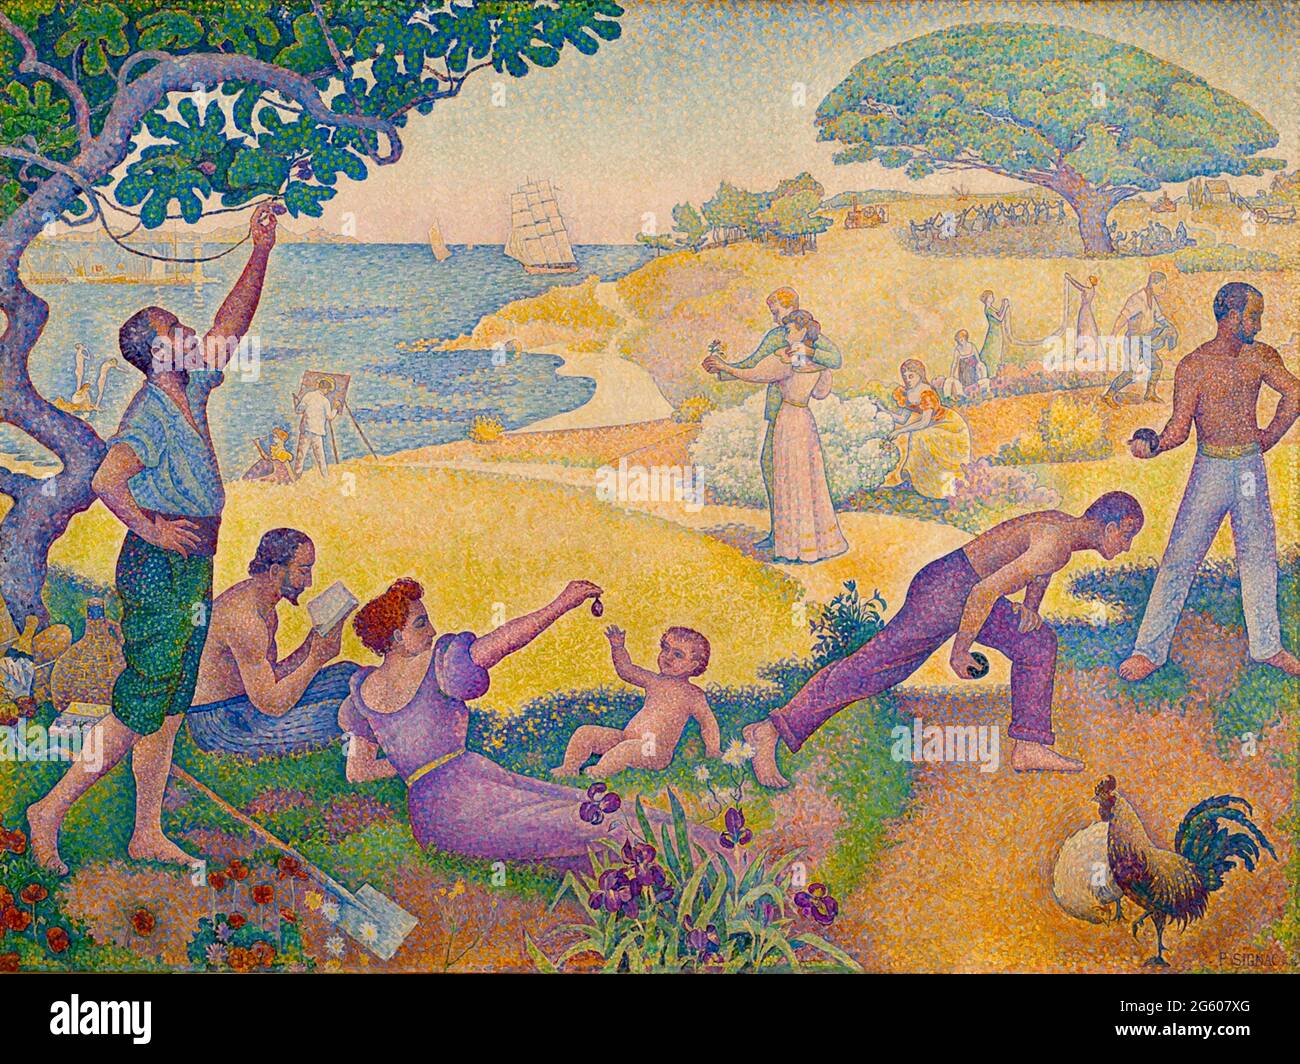 Paul Signac Kunstwerk mit dem Titel in the Age of Harmony - das goldene Zeitalter ist nicht in der Vergangenheit, es ist in der Zukunft - Au temps d'Harmonie - 1893 - 1895. Stockfoto